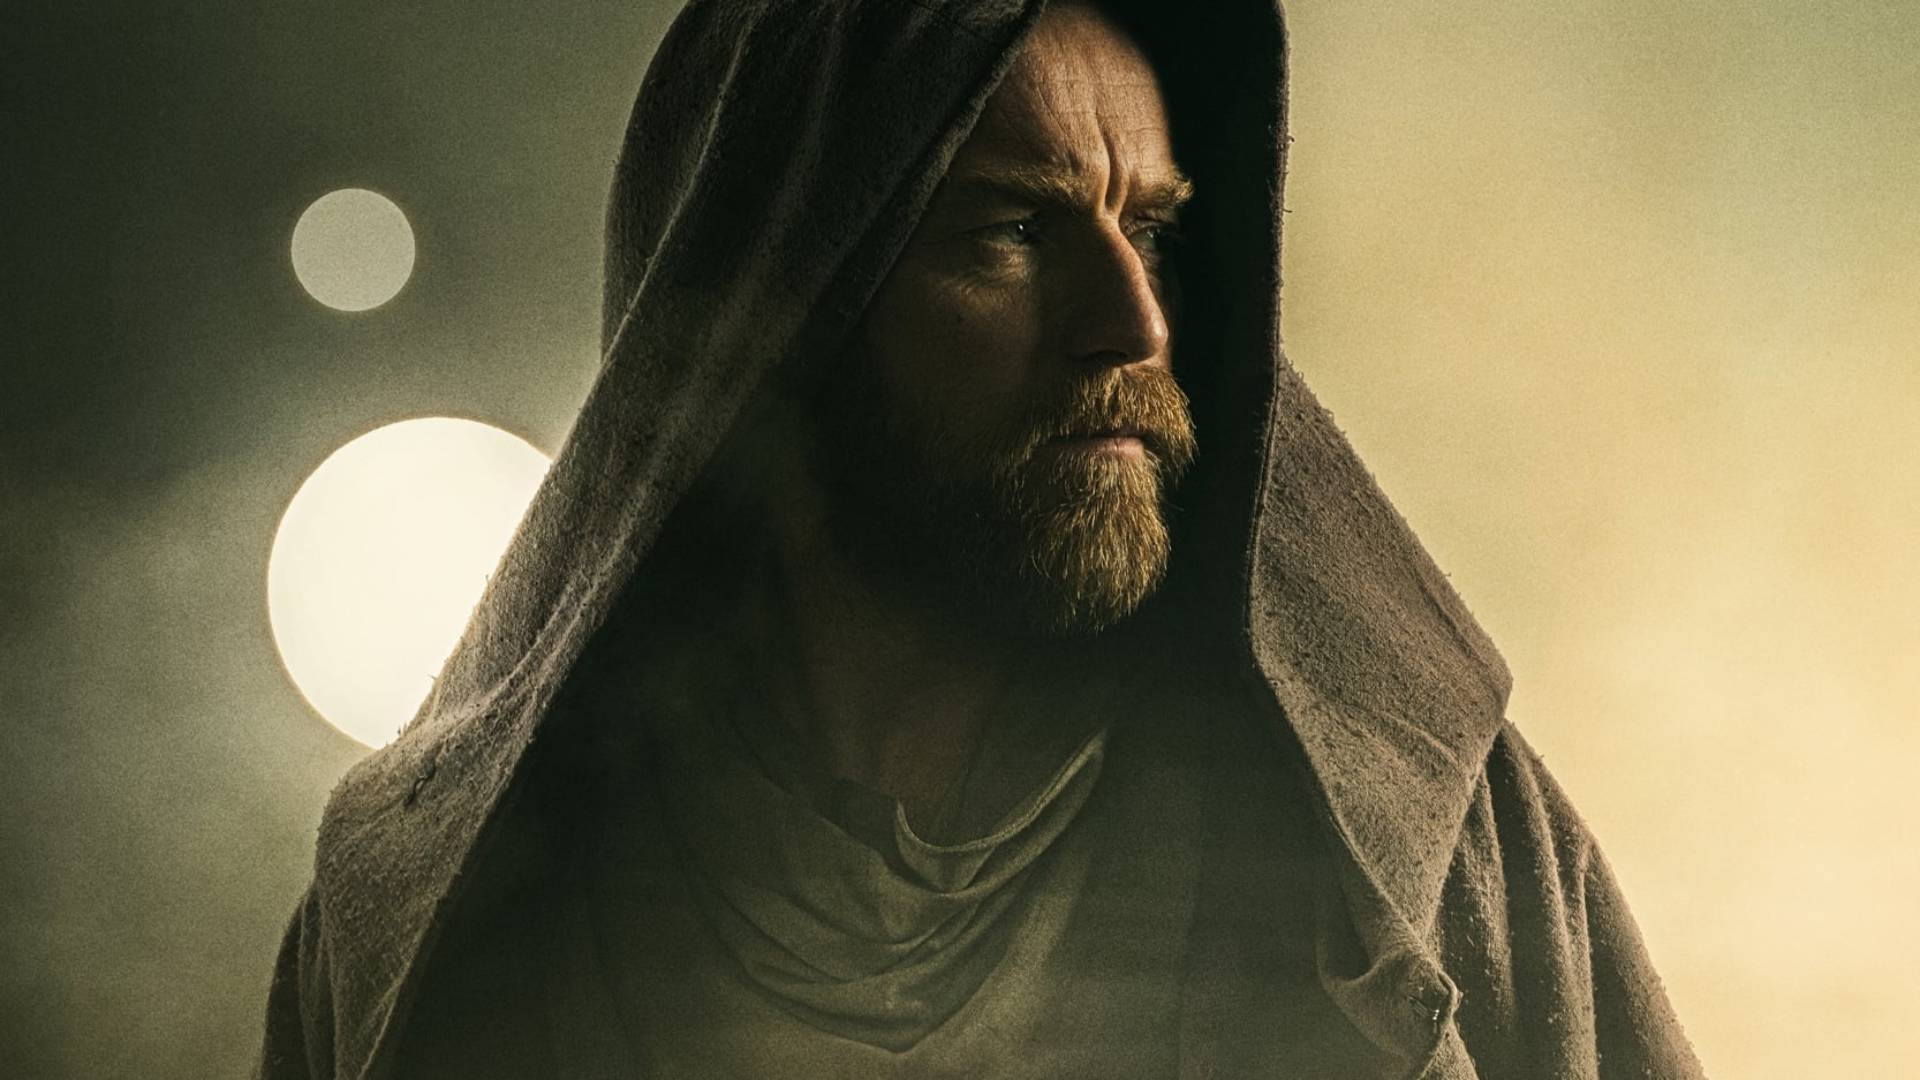 Elenco e produção dá detalhes sobre Obi-Wan Kenobi